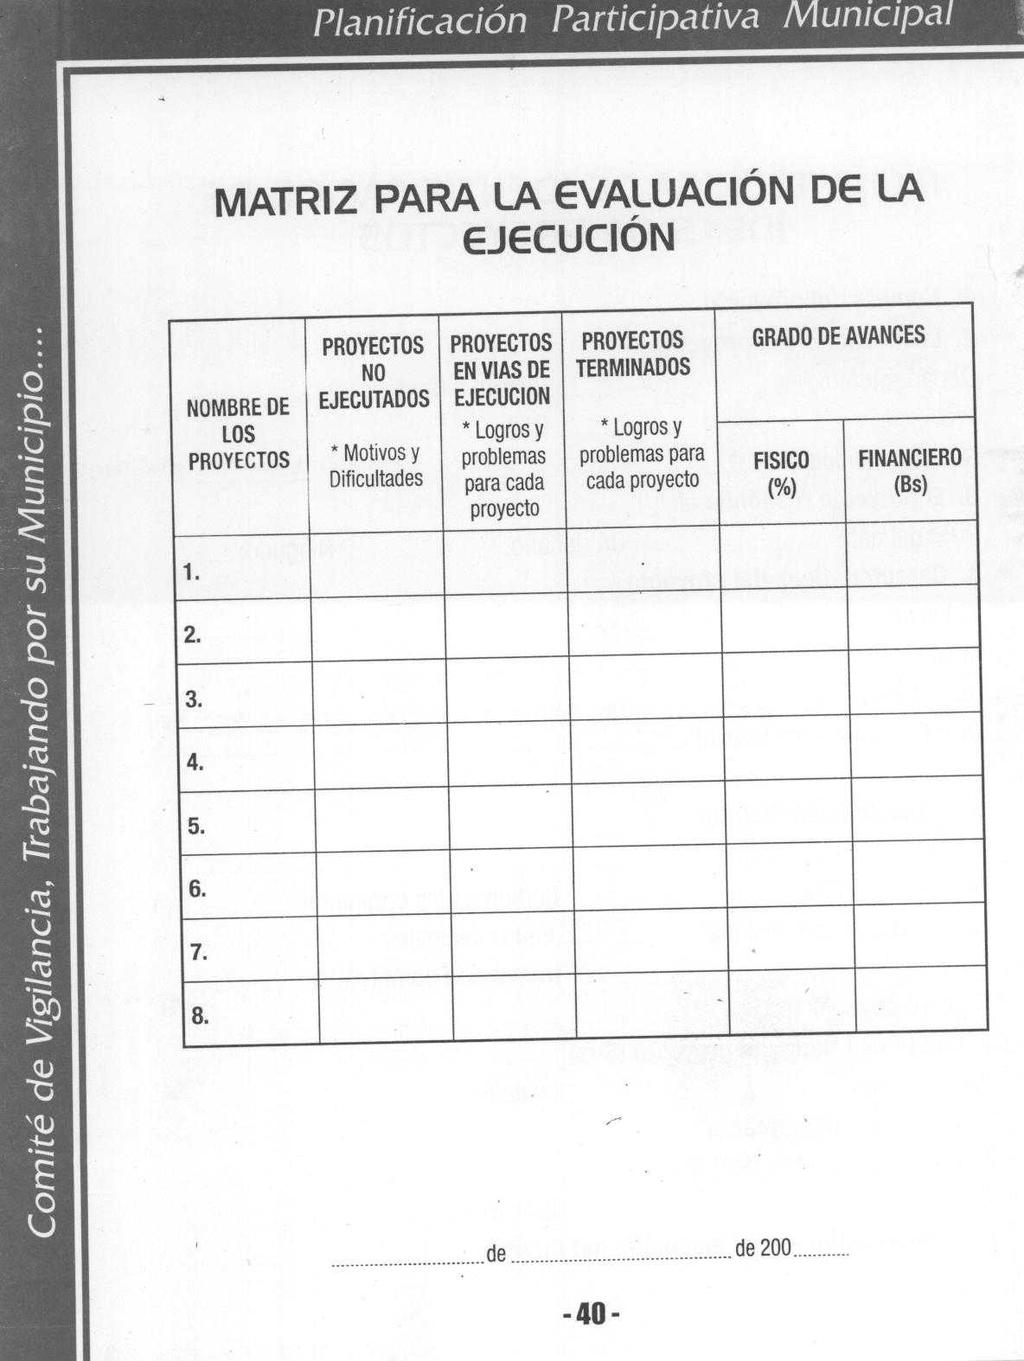 Planificación Participativa Municipa MATRIZ PARA LA EVALUACIÓN DE LA EJECUCIÓN -7 PROYECTOS NO NOMBRE DE EJECUTADOS LOS PROYECTOS Motivos y Dificultades PROYECTOS EN VIAS DE EJECUCION *